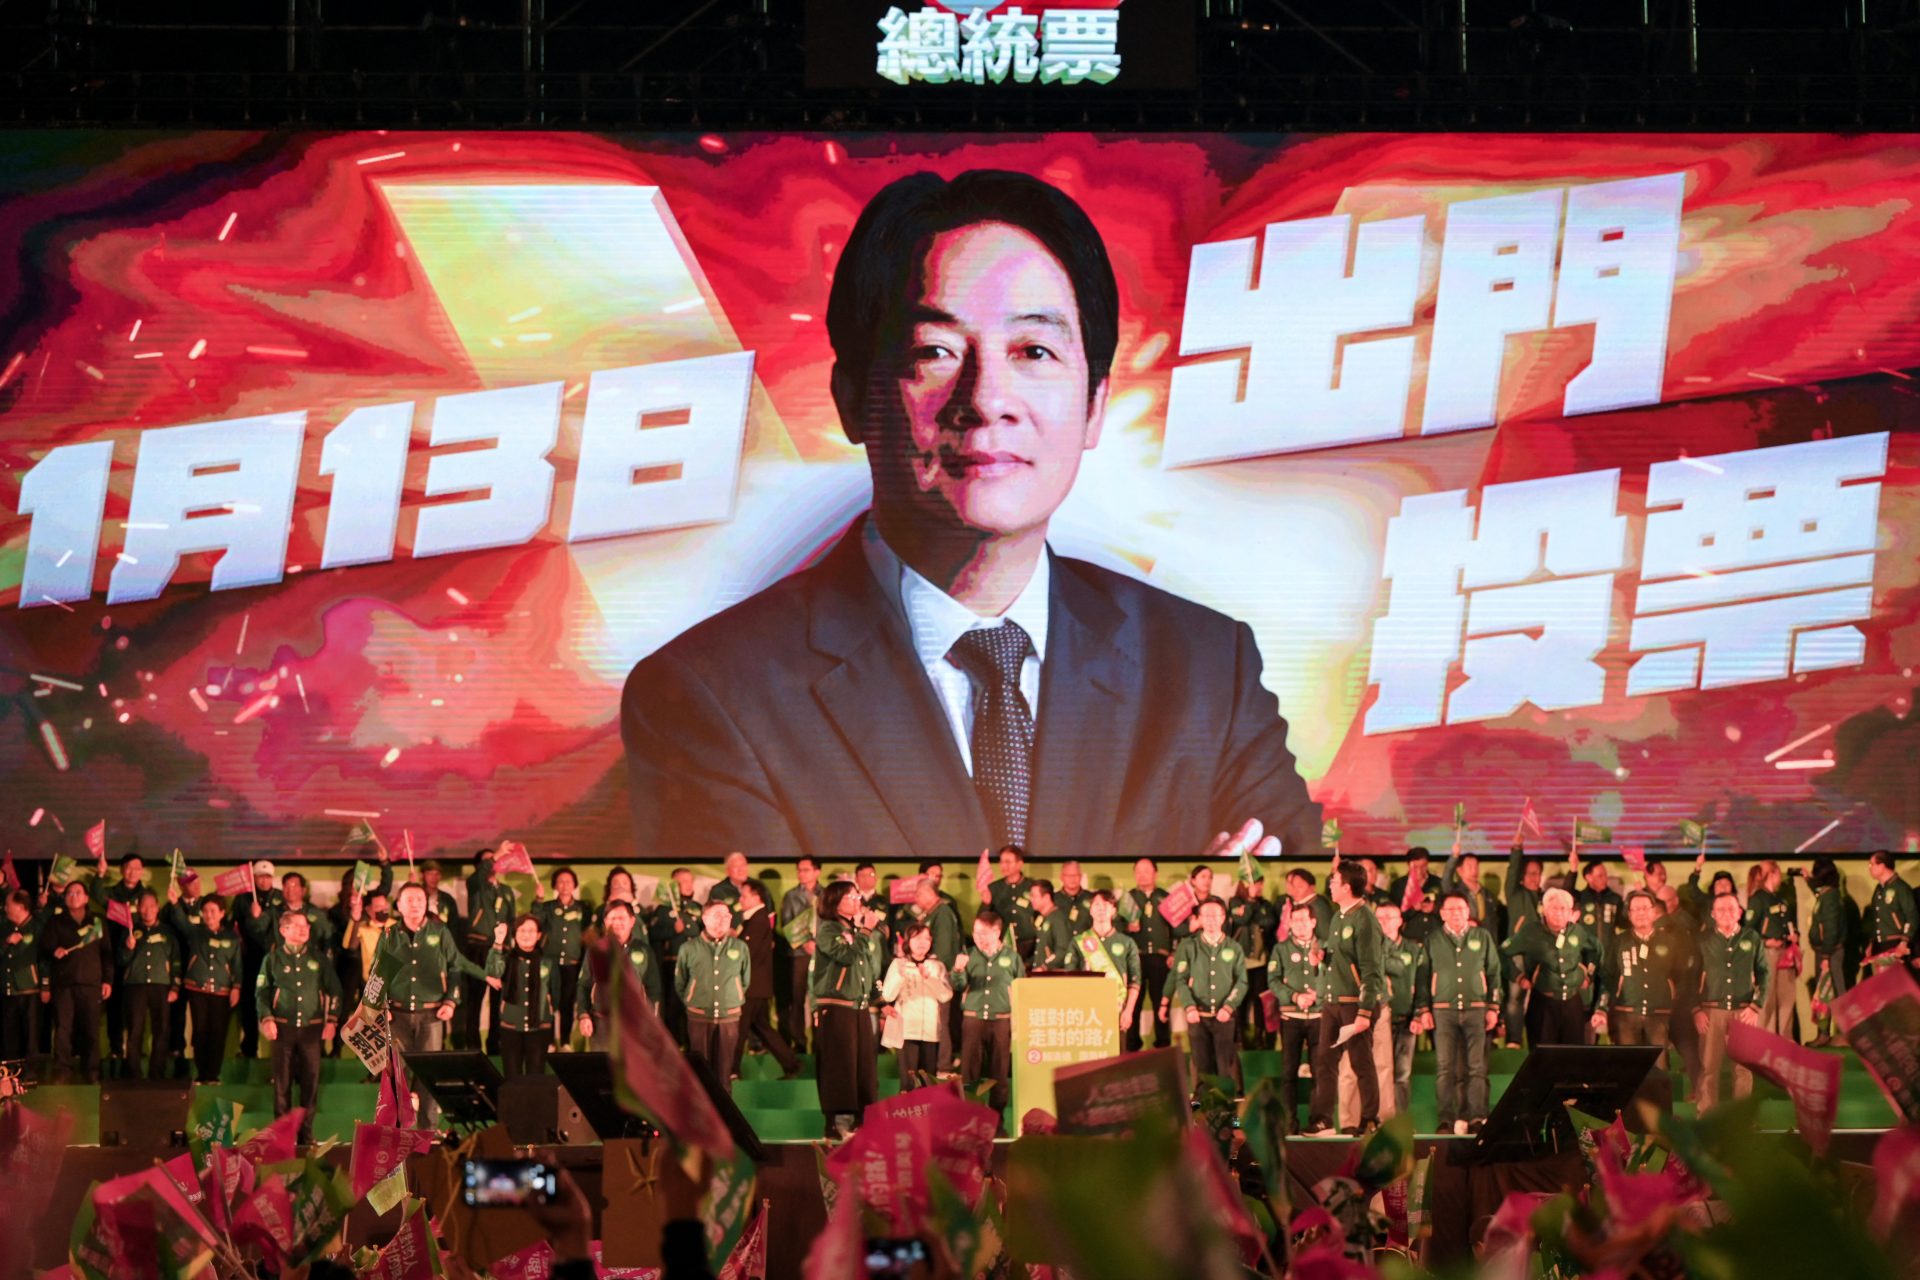 Contundente mensaje del nuevo líder de Taiwán, William Lai, ante la amenaza militar de China